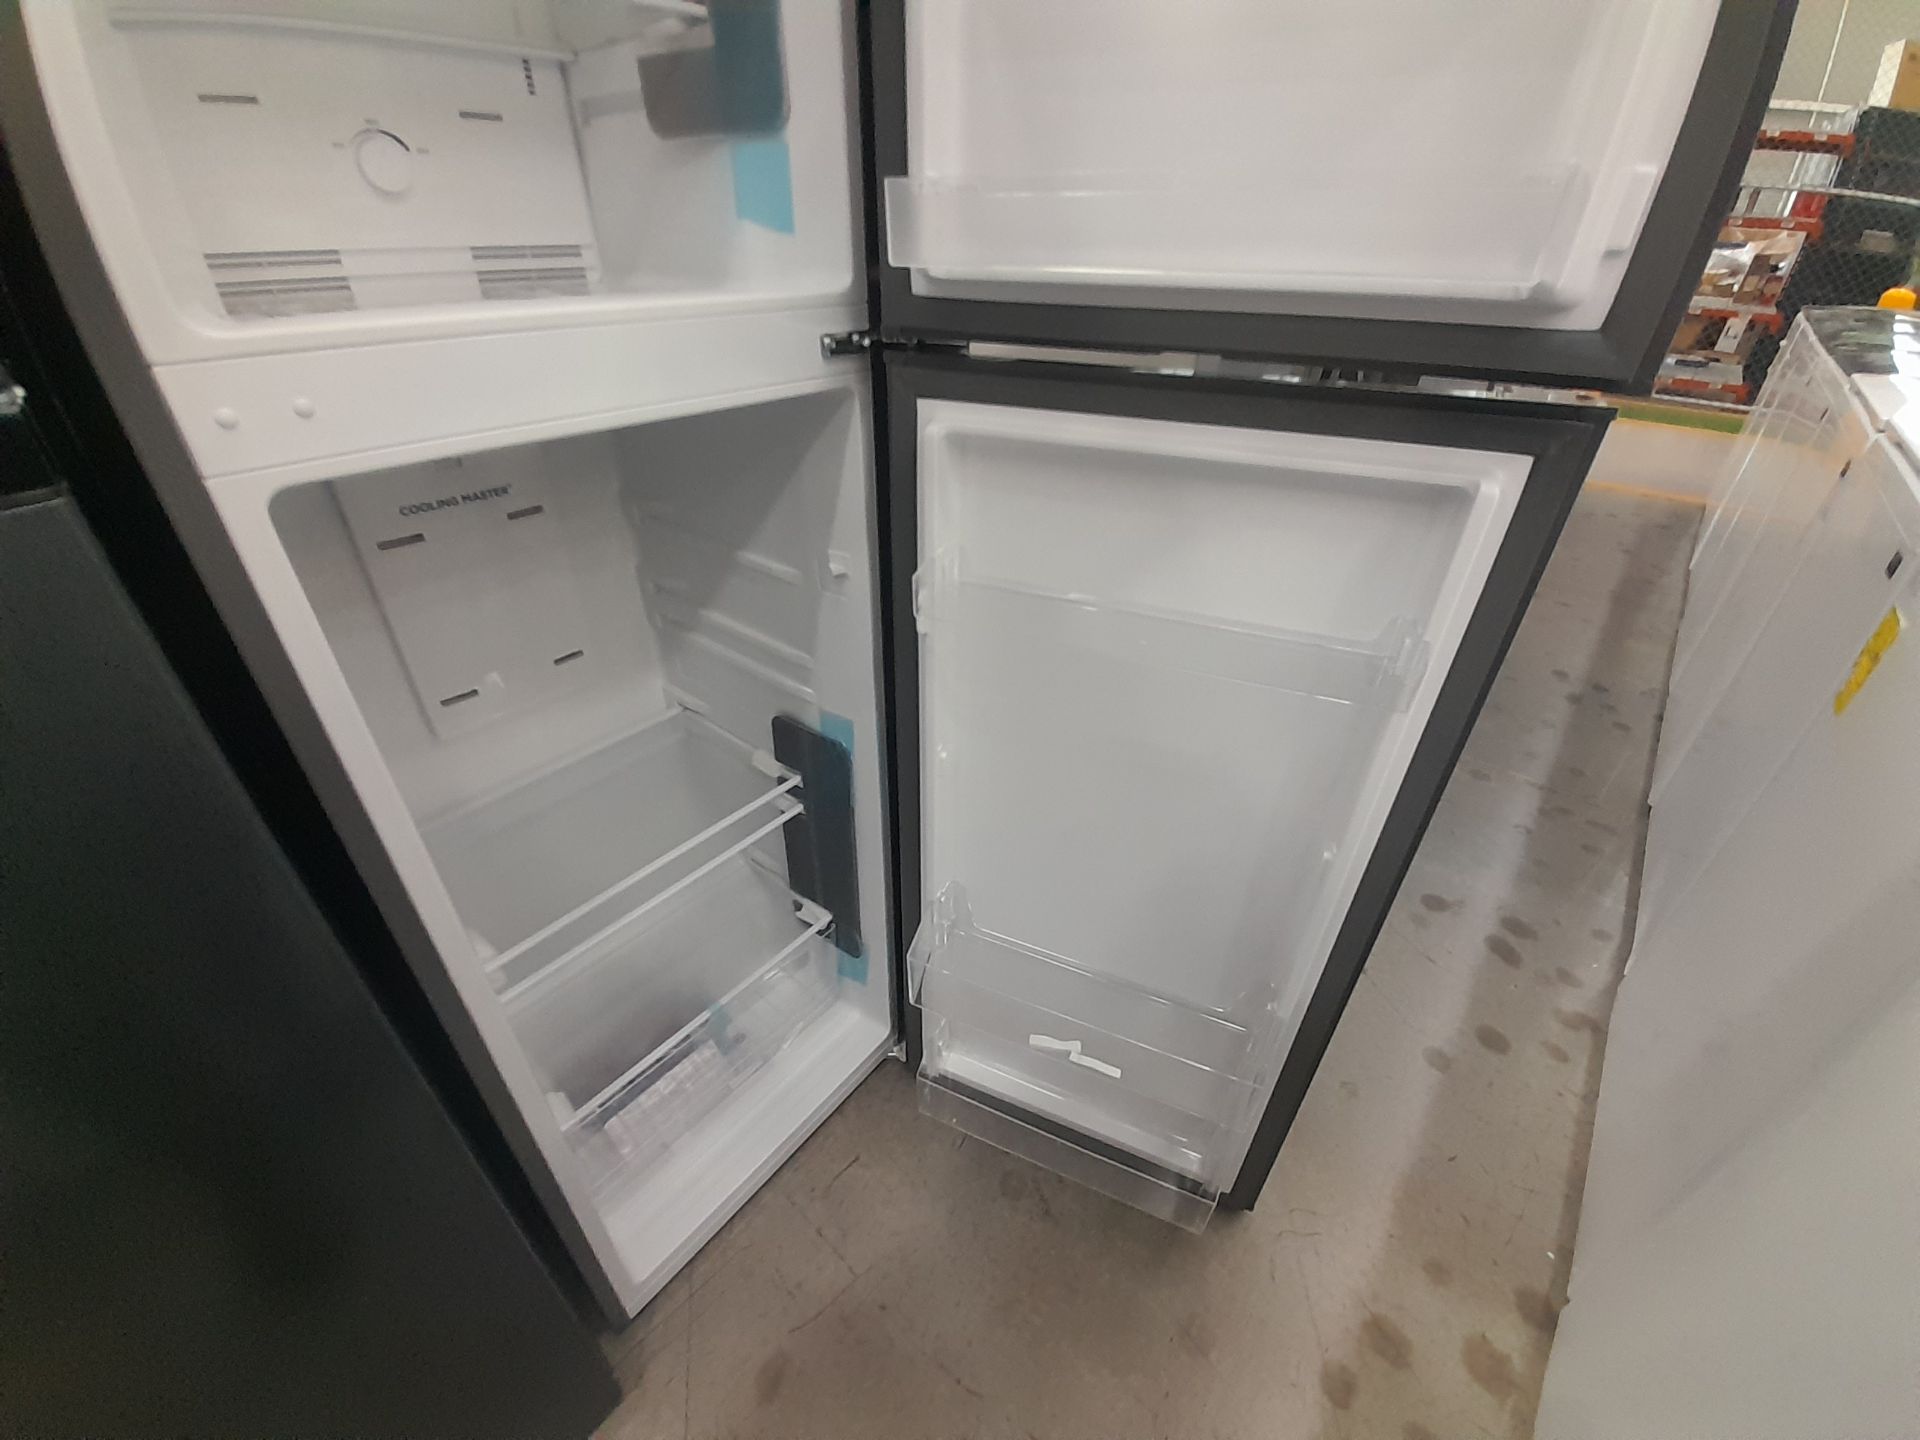 Lote de 2 refrigeradores contiene: 1 Refrigerador Marca WINIA, Modelo WRT9000AMMX, Color GRIS; - Image 5 of 8